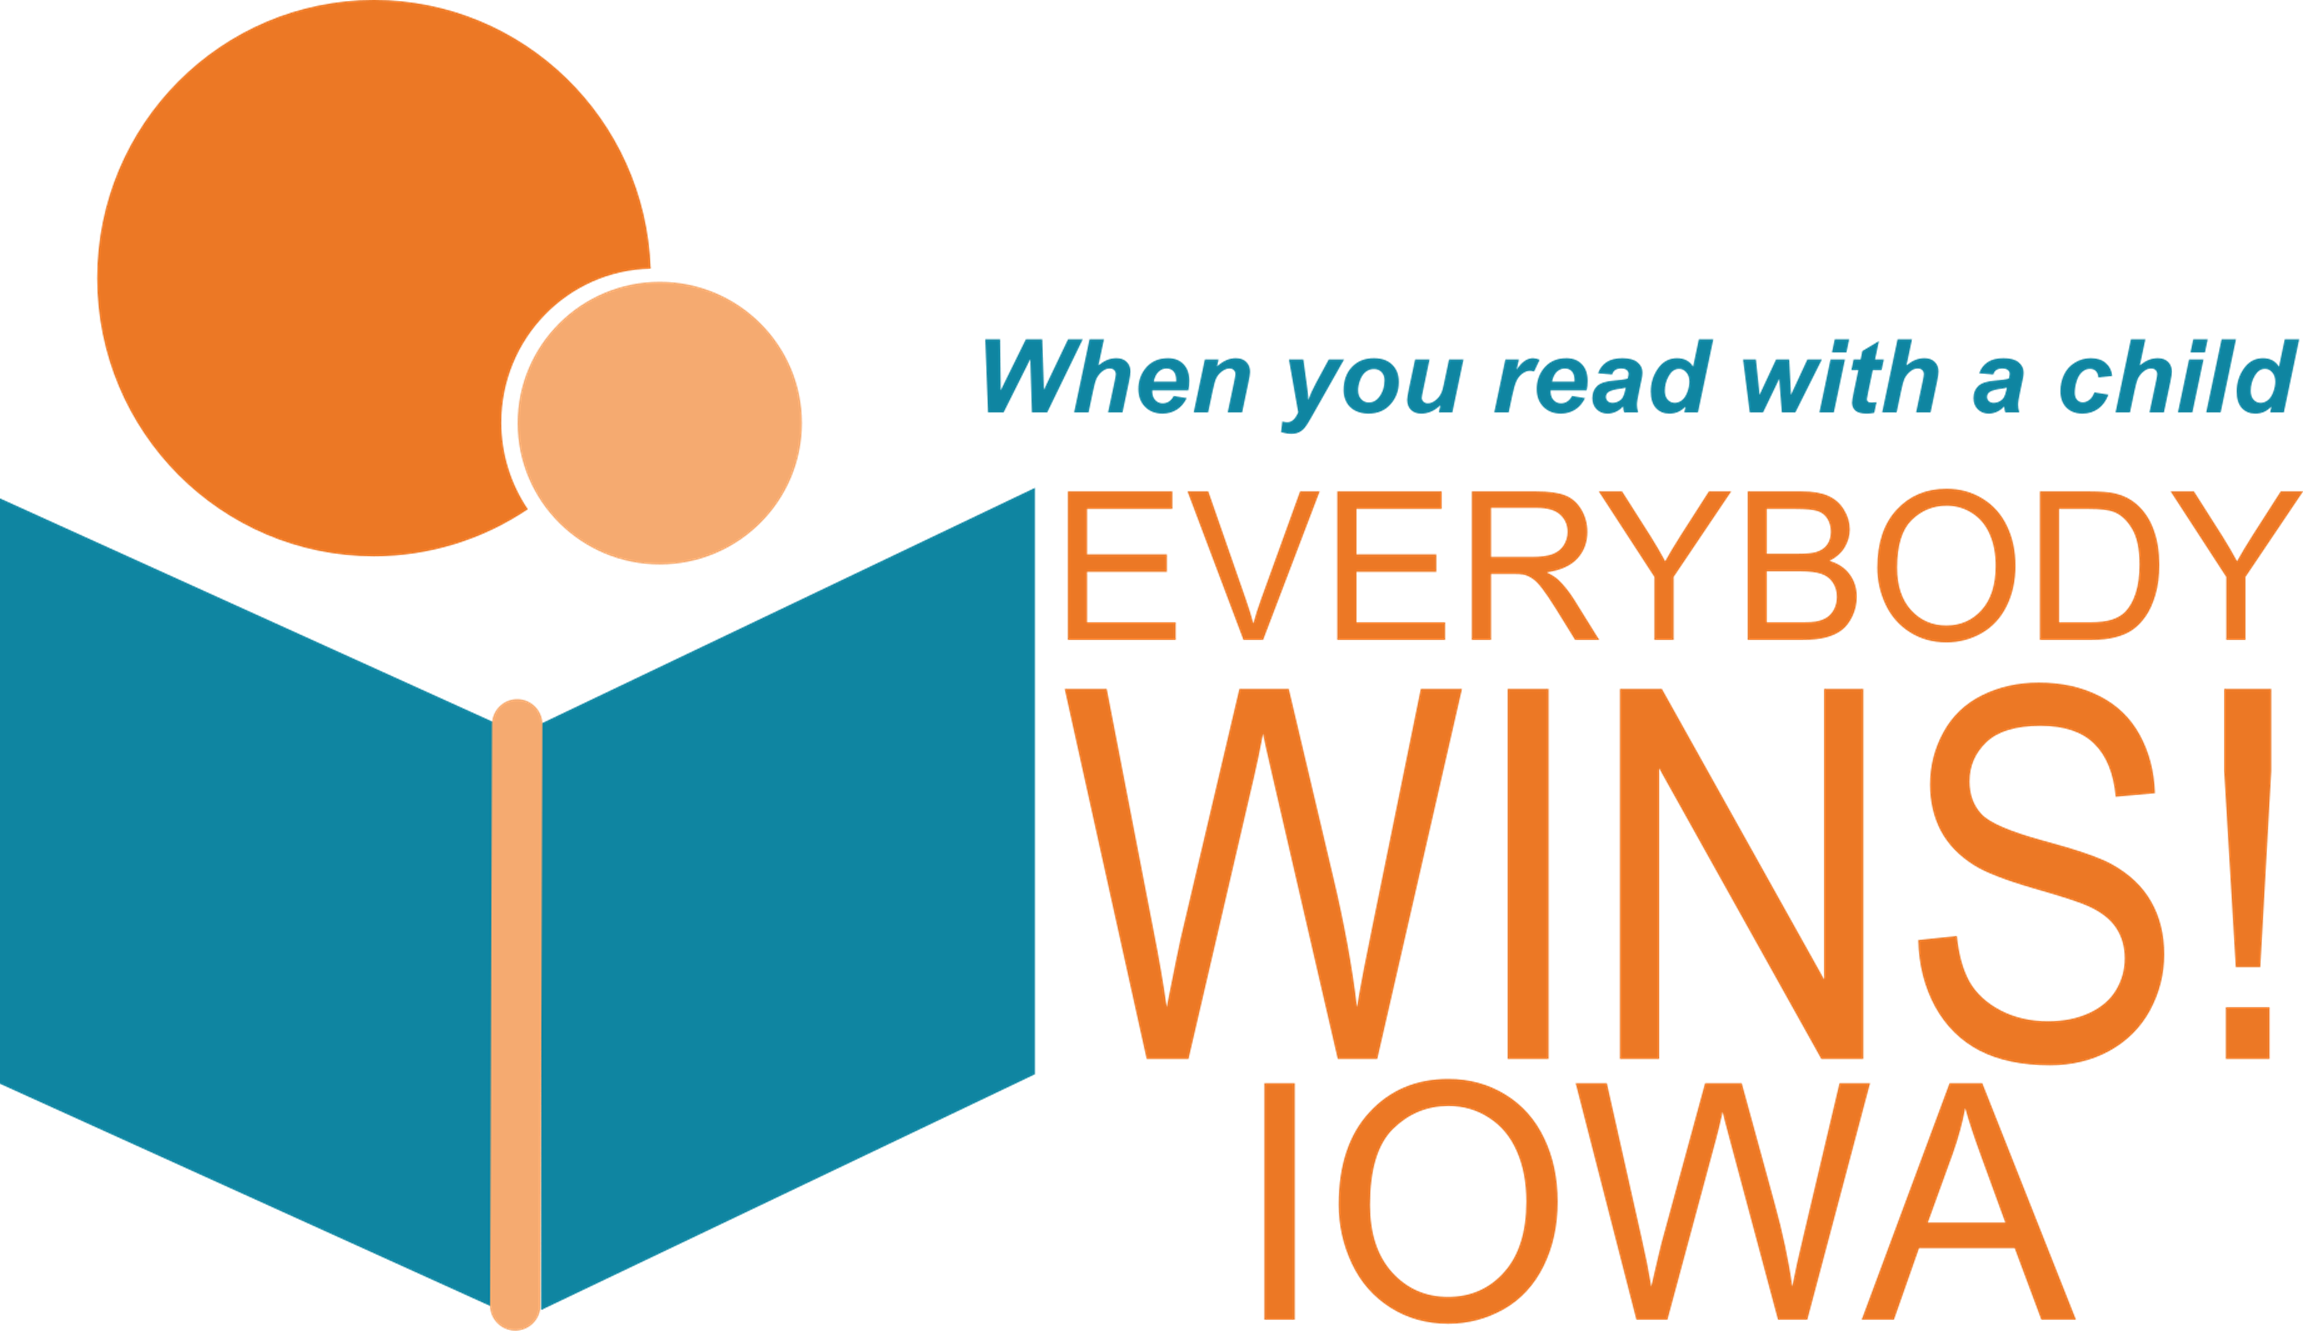 Everybody Wins! Iowa logo